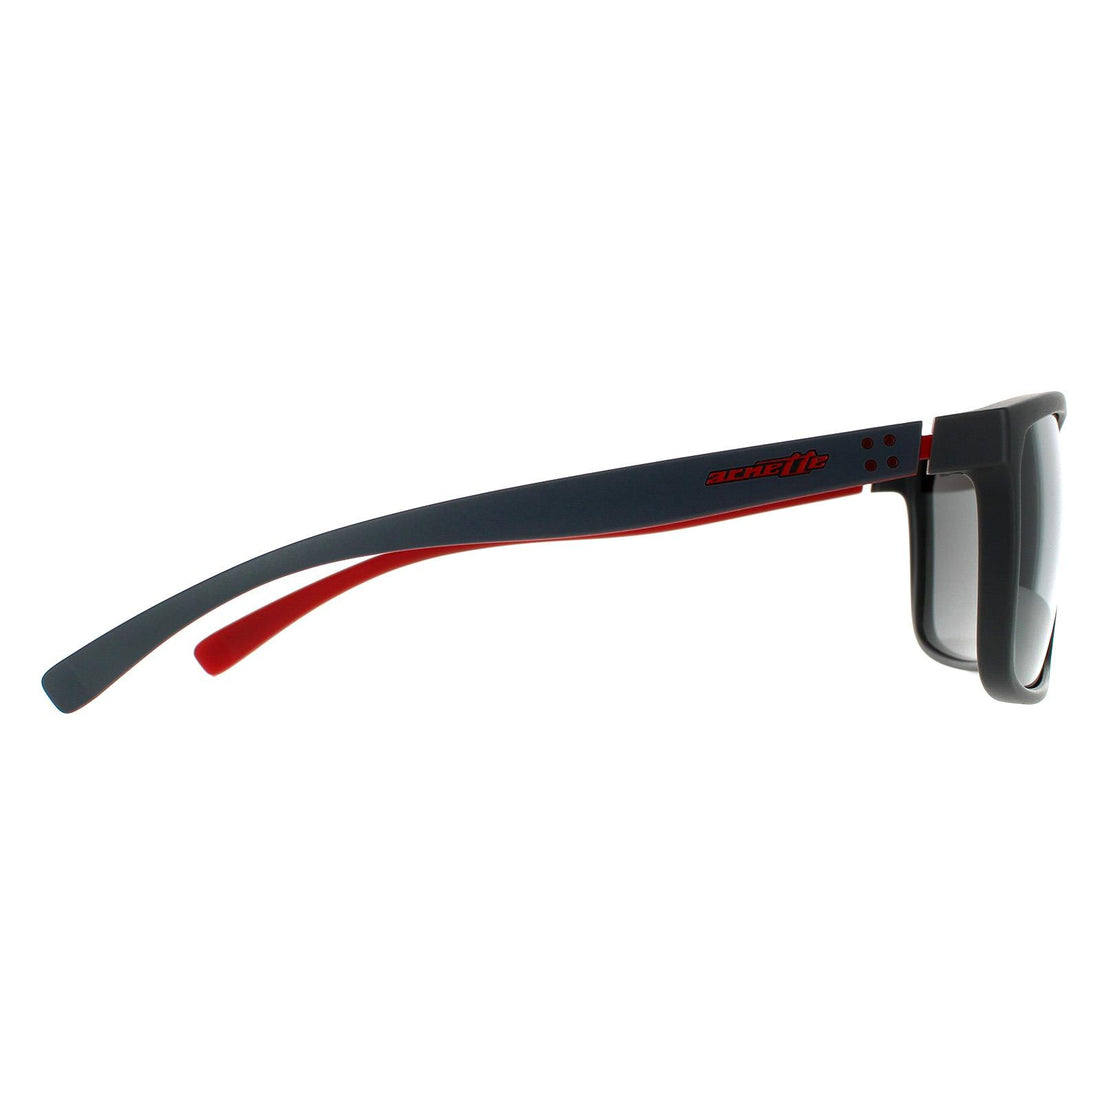 Arnette Stripe AN4251 Sunglasses